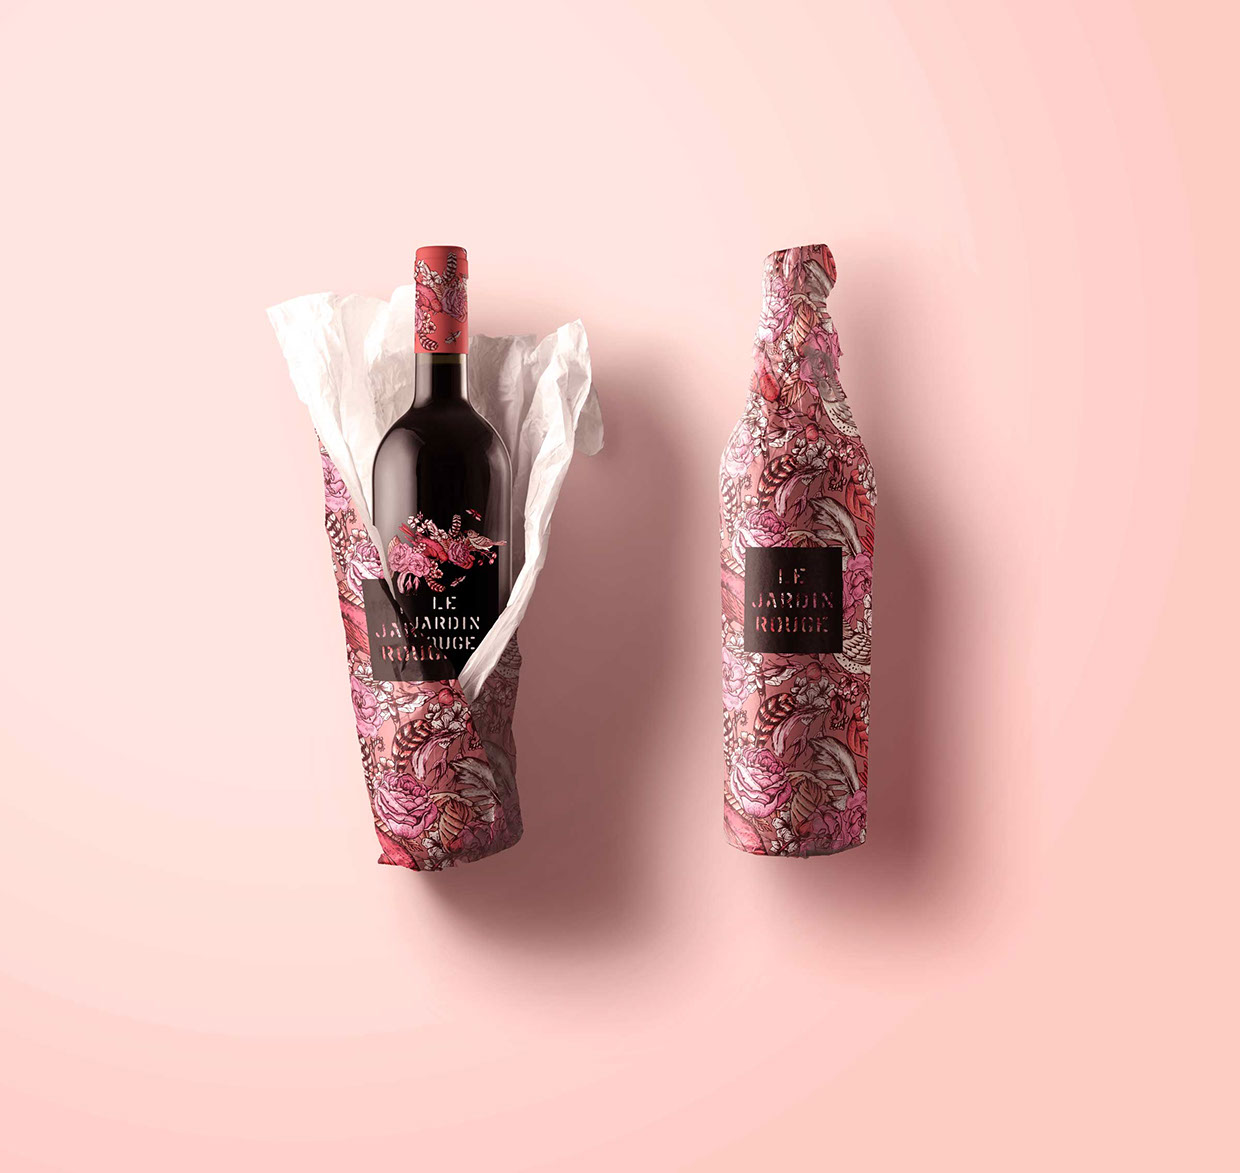 Le Jardin Tattoo Wine - Packaging